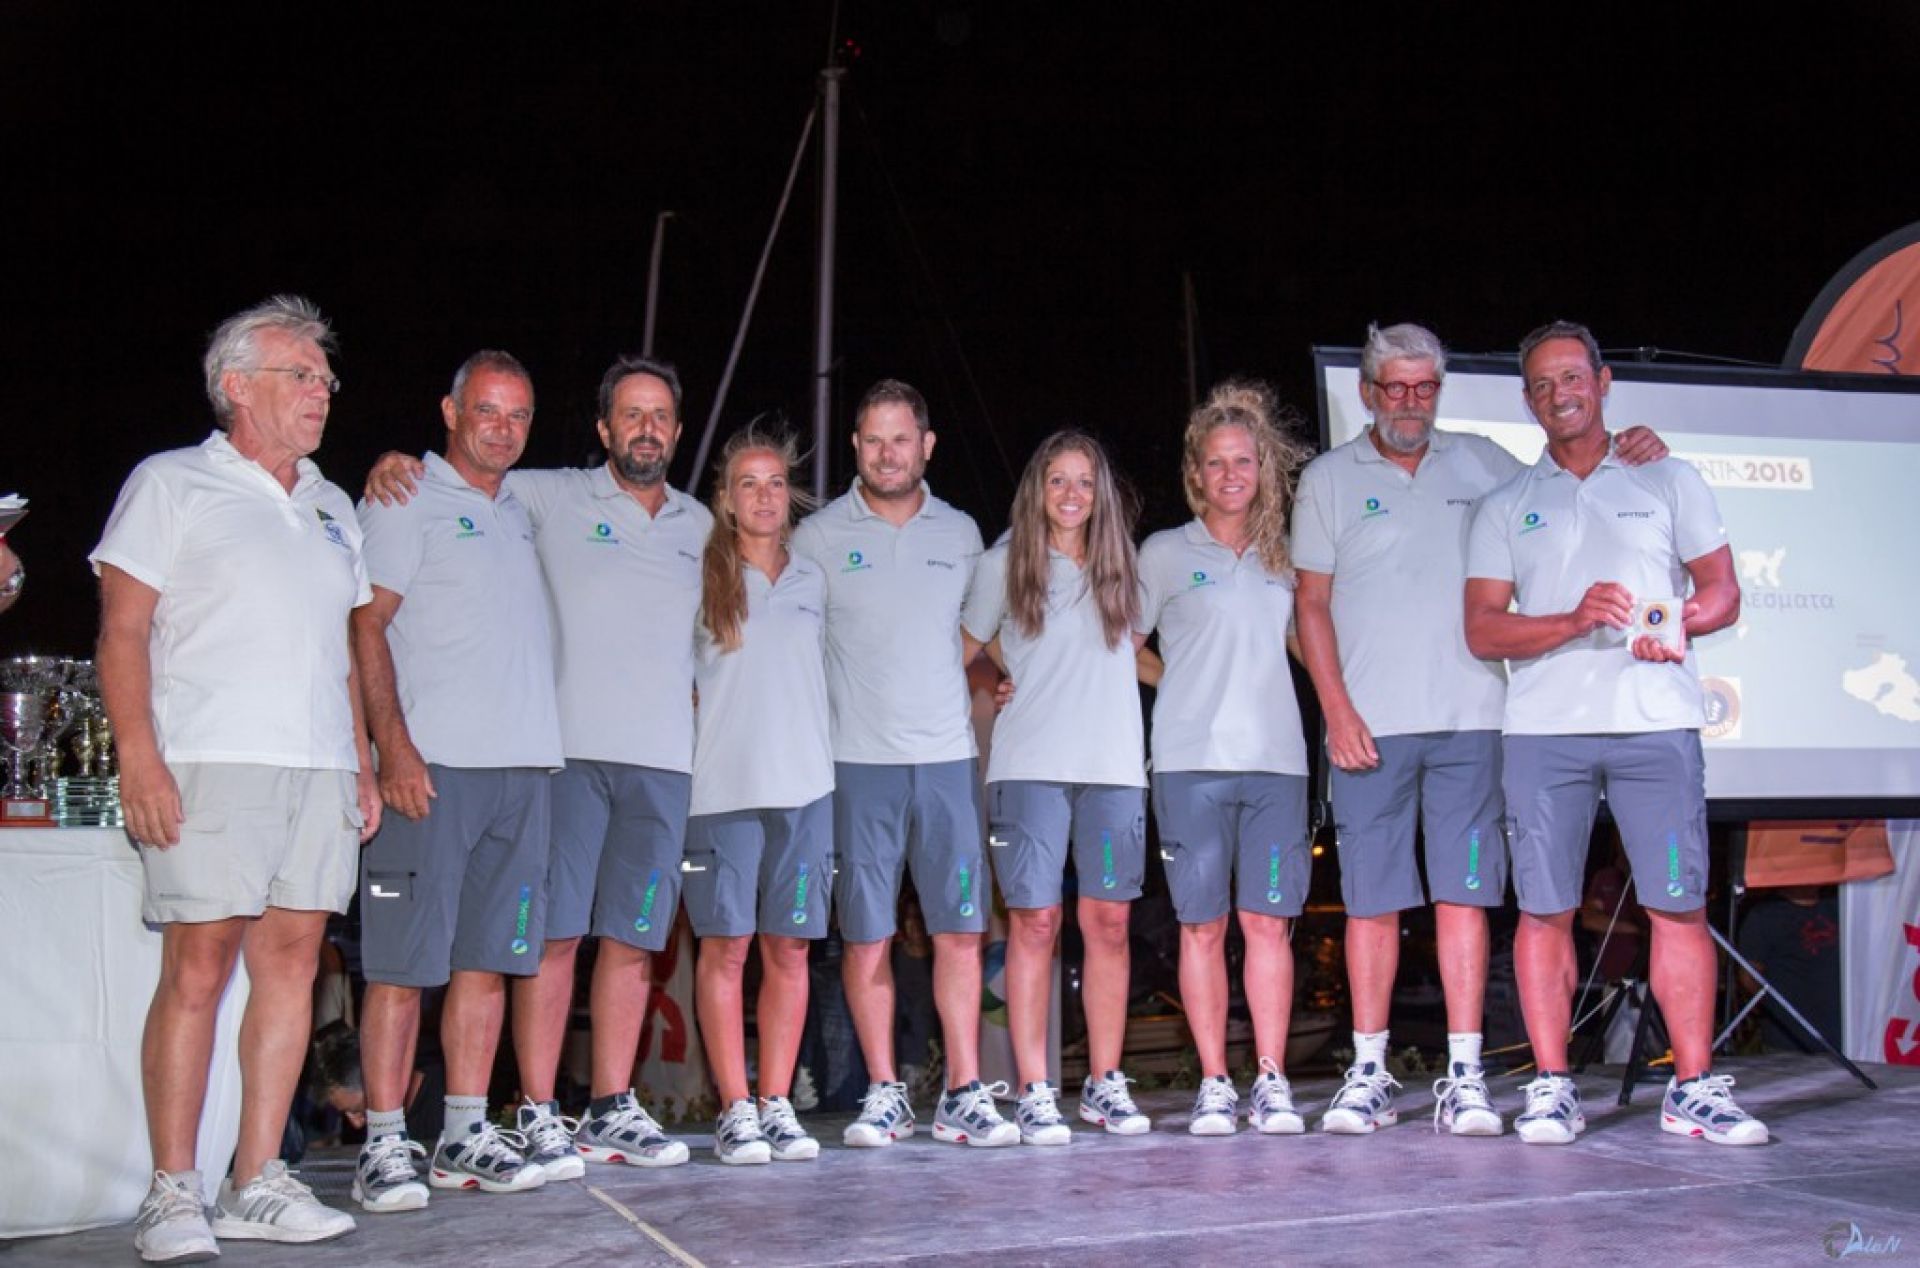 Oι νικητές στην Αegean Regatta 2016